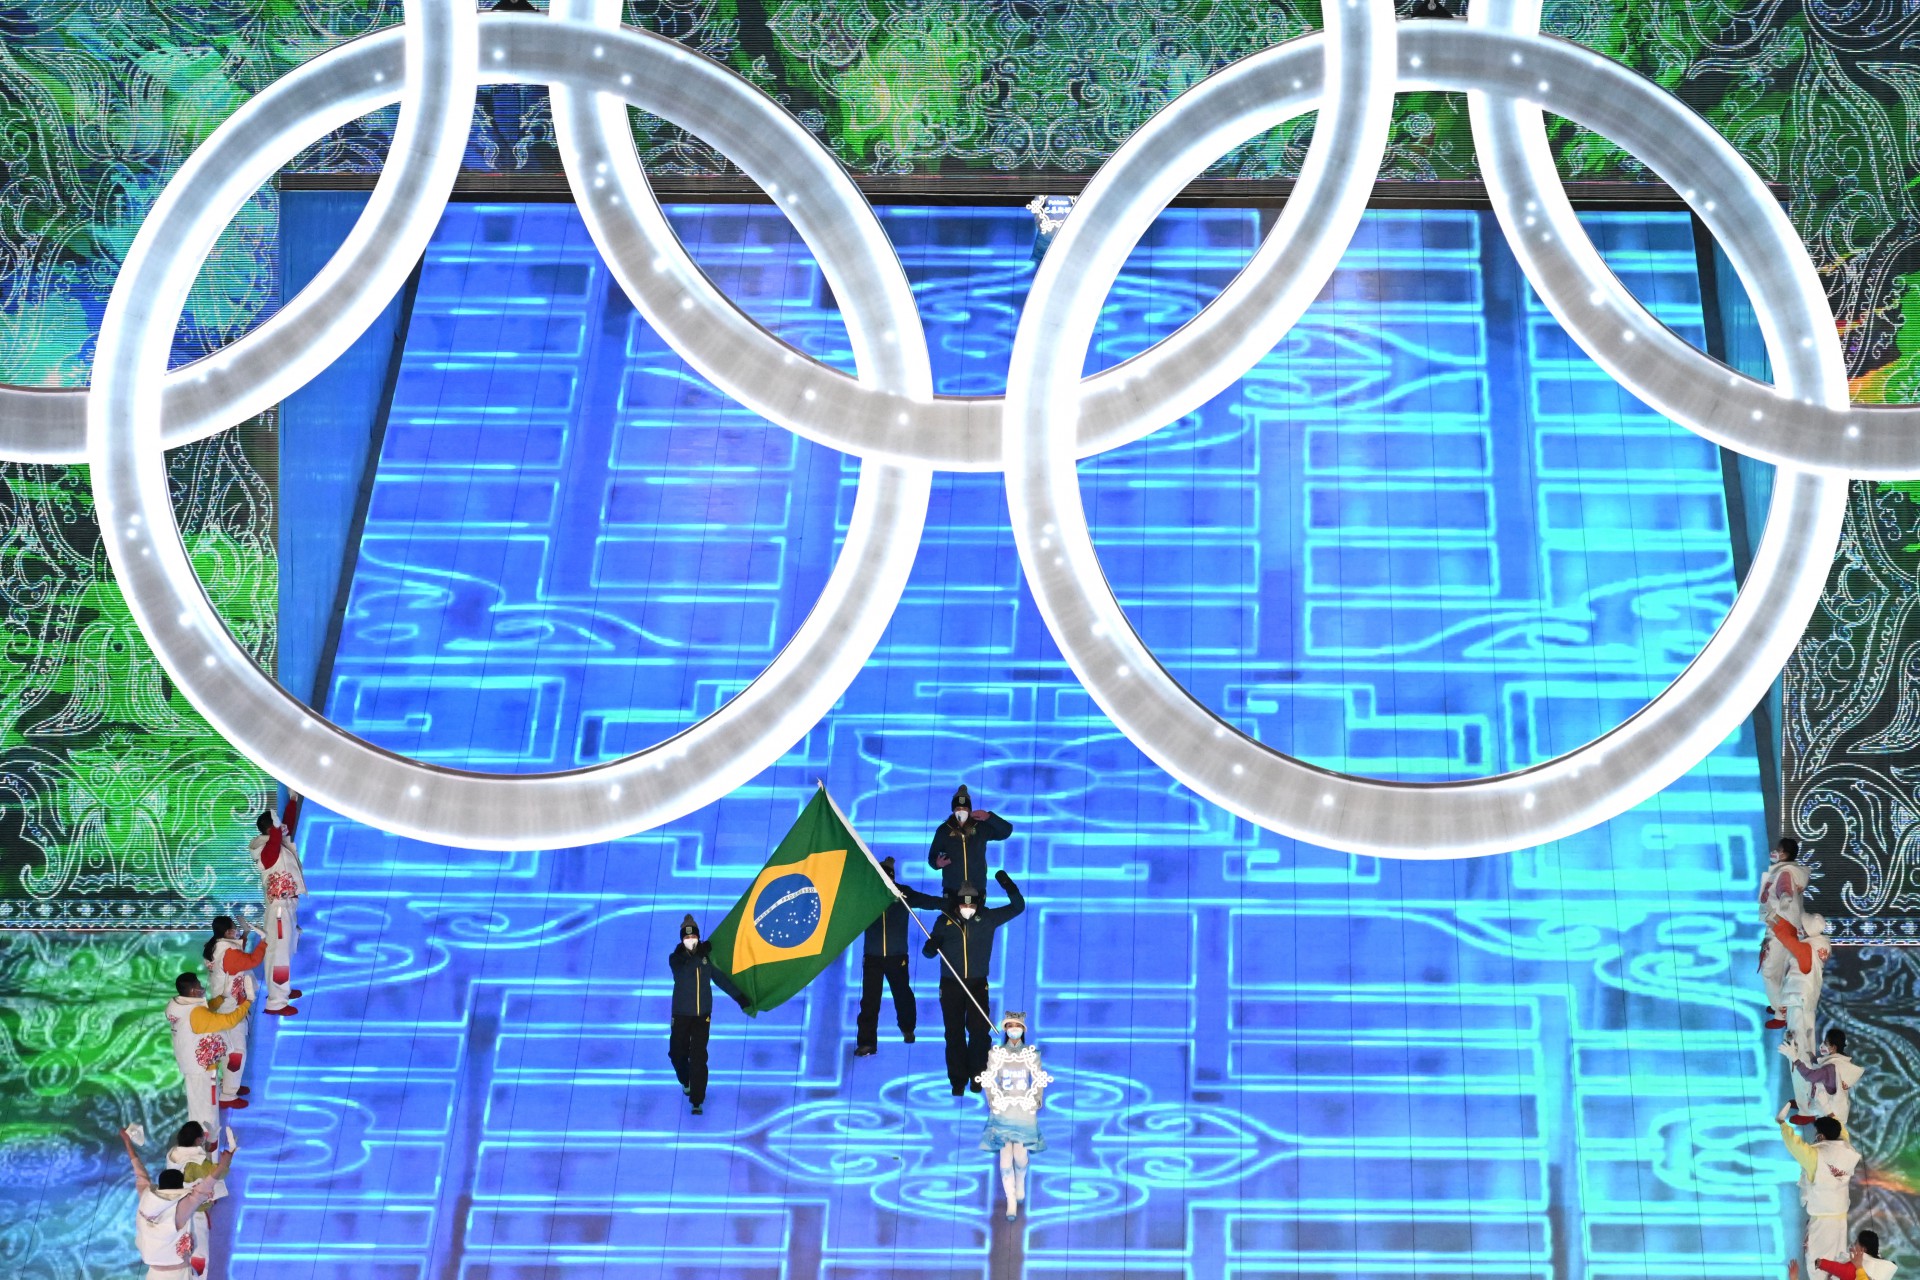 Delegação do Brasil durante a cerimônia de abertura dos Jogos Olímpicos de Inverno de Pequim 2022, no Estádio Nacional, conhecido como Ninho de Pássaro, em Pequim, em 4 de fevereiro de 2022. (Foto: Jewel SAMAD / AFP)